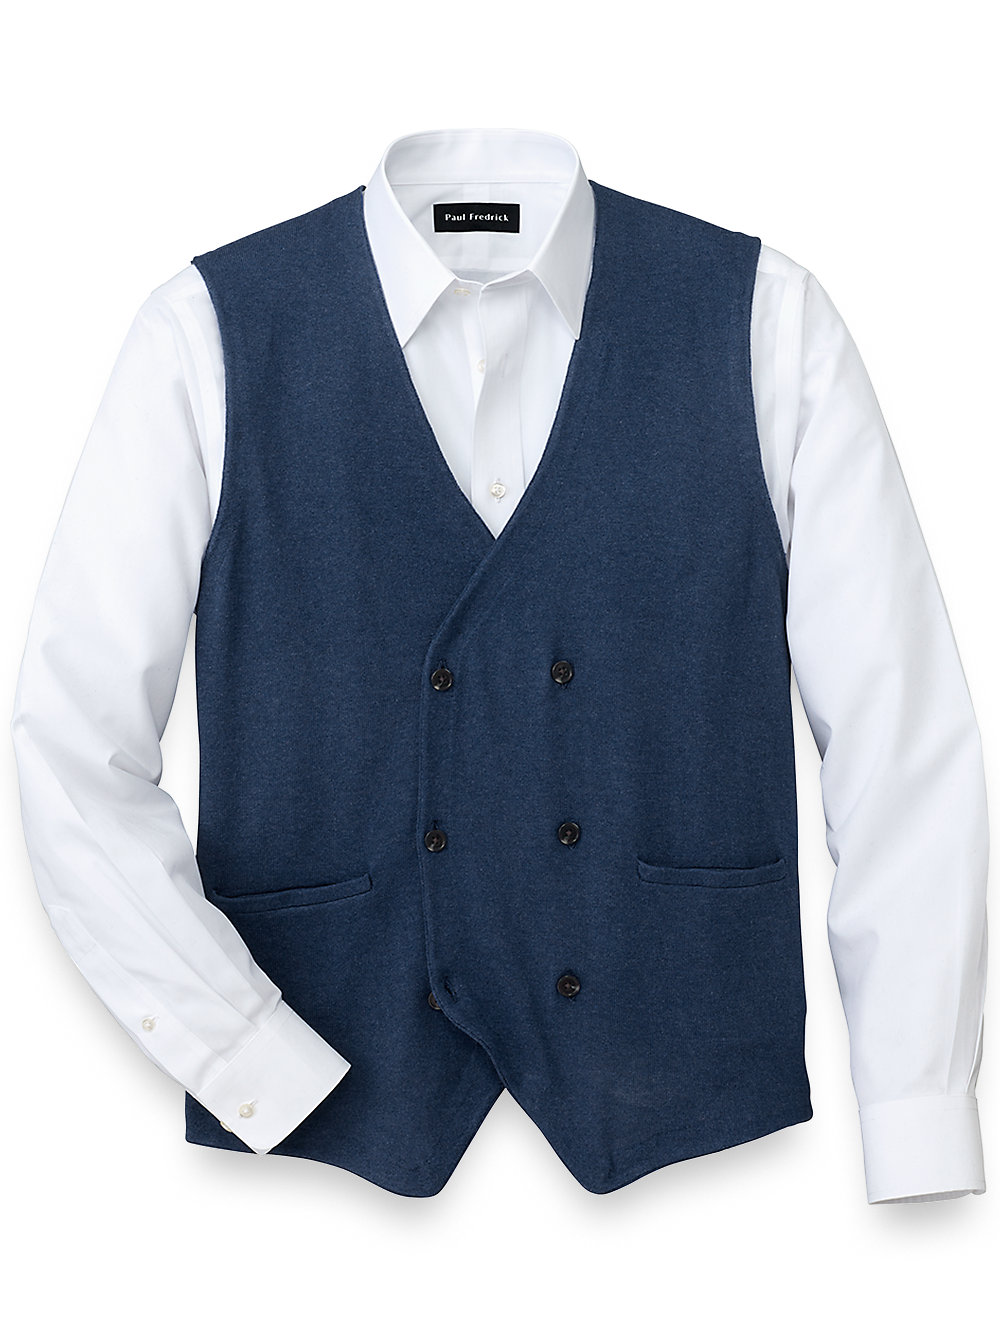 Cotton Cashmere V-Neck Pullover Sweater Vest Paul Fredrick Mens Silk